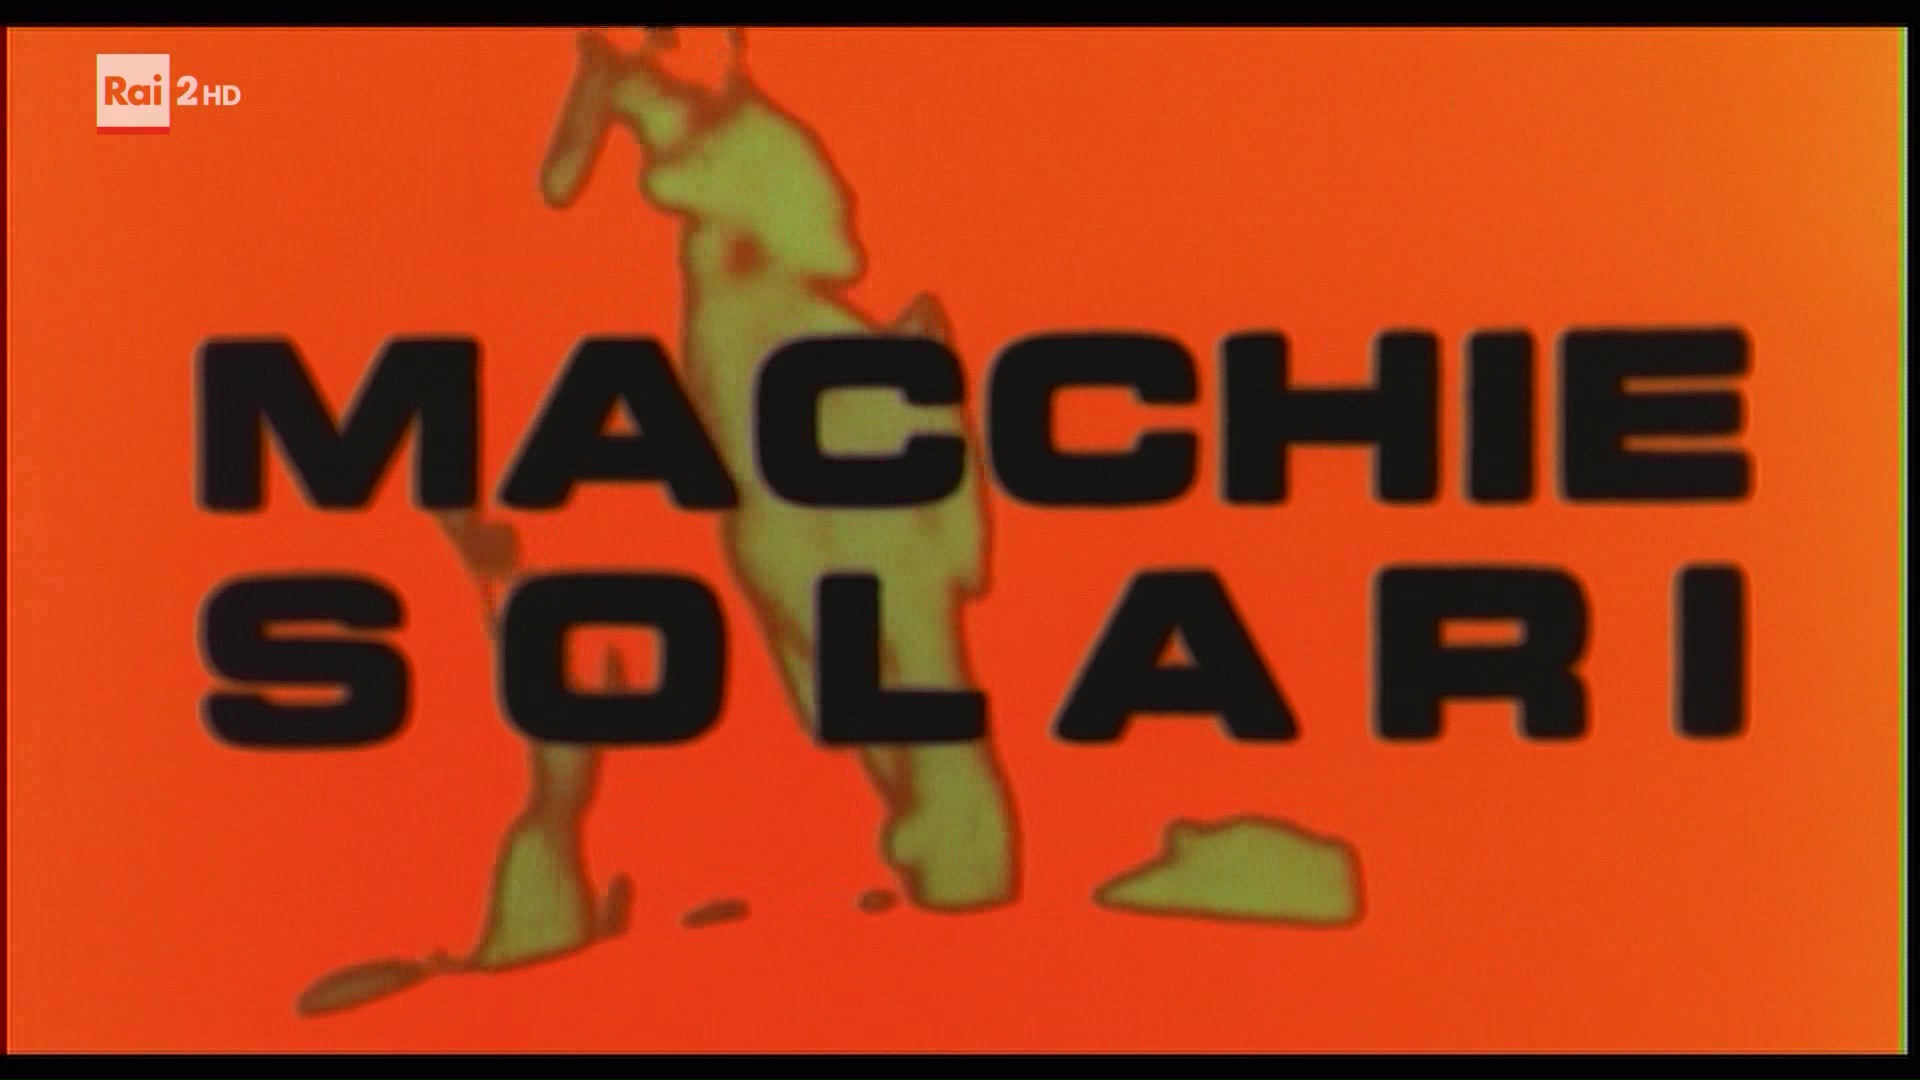 Macchie solari (1975) titles.jpg